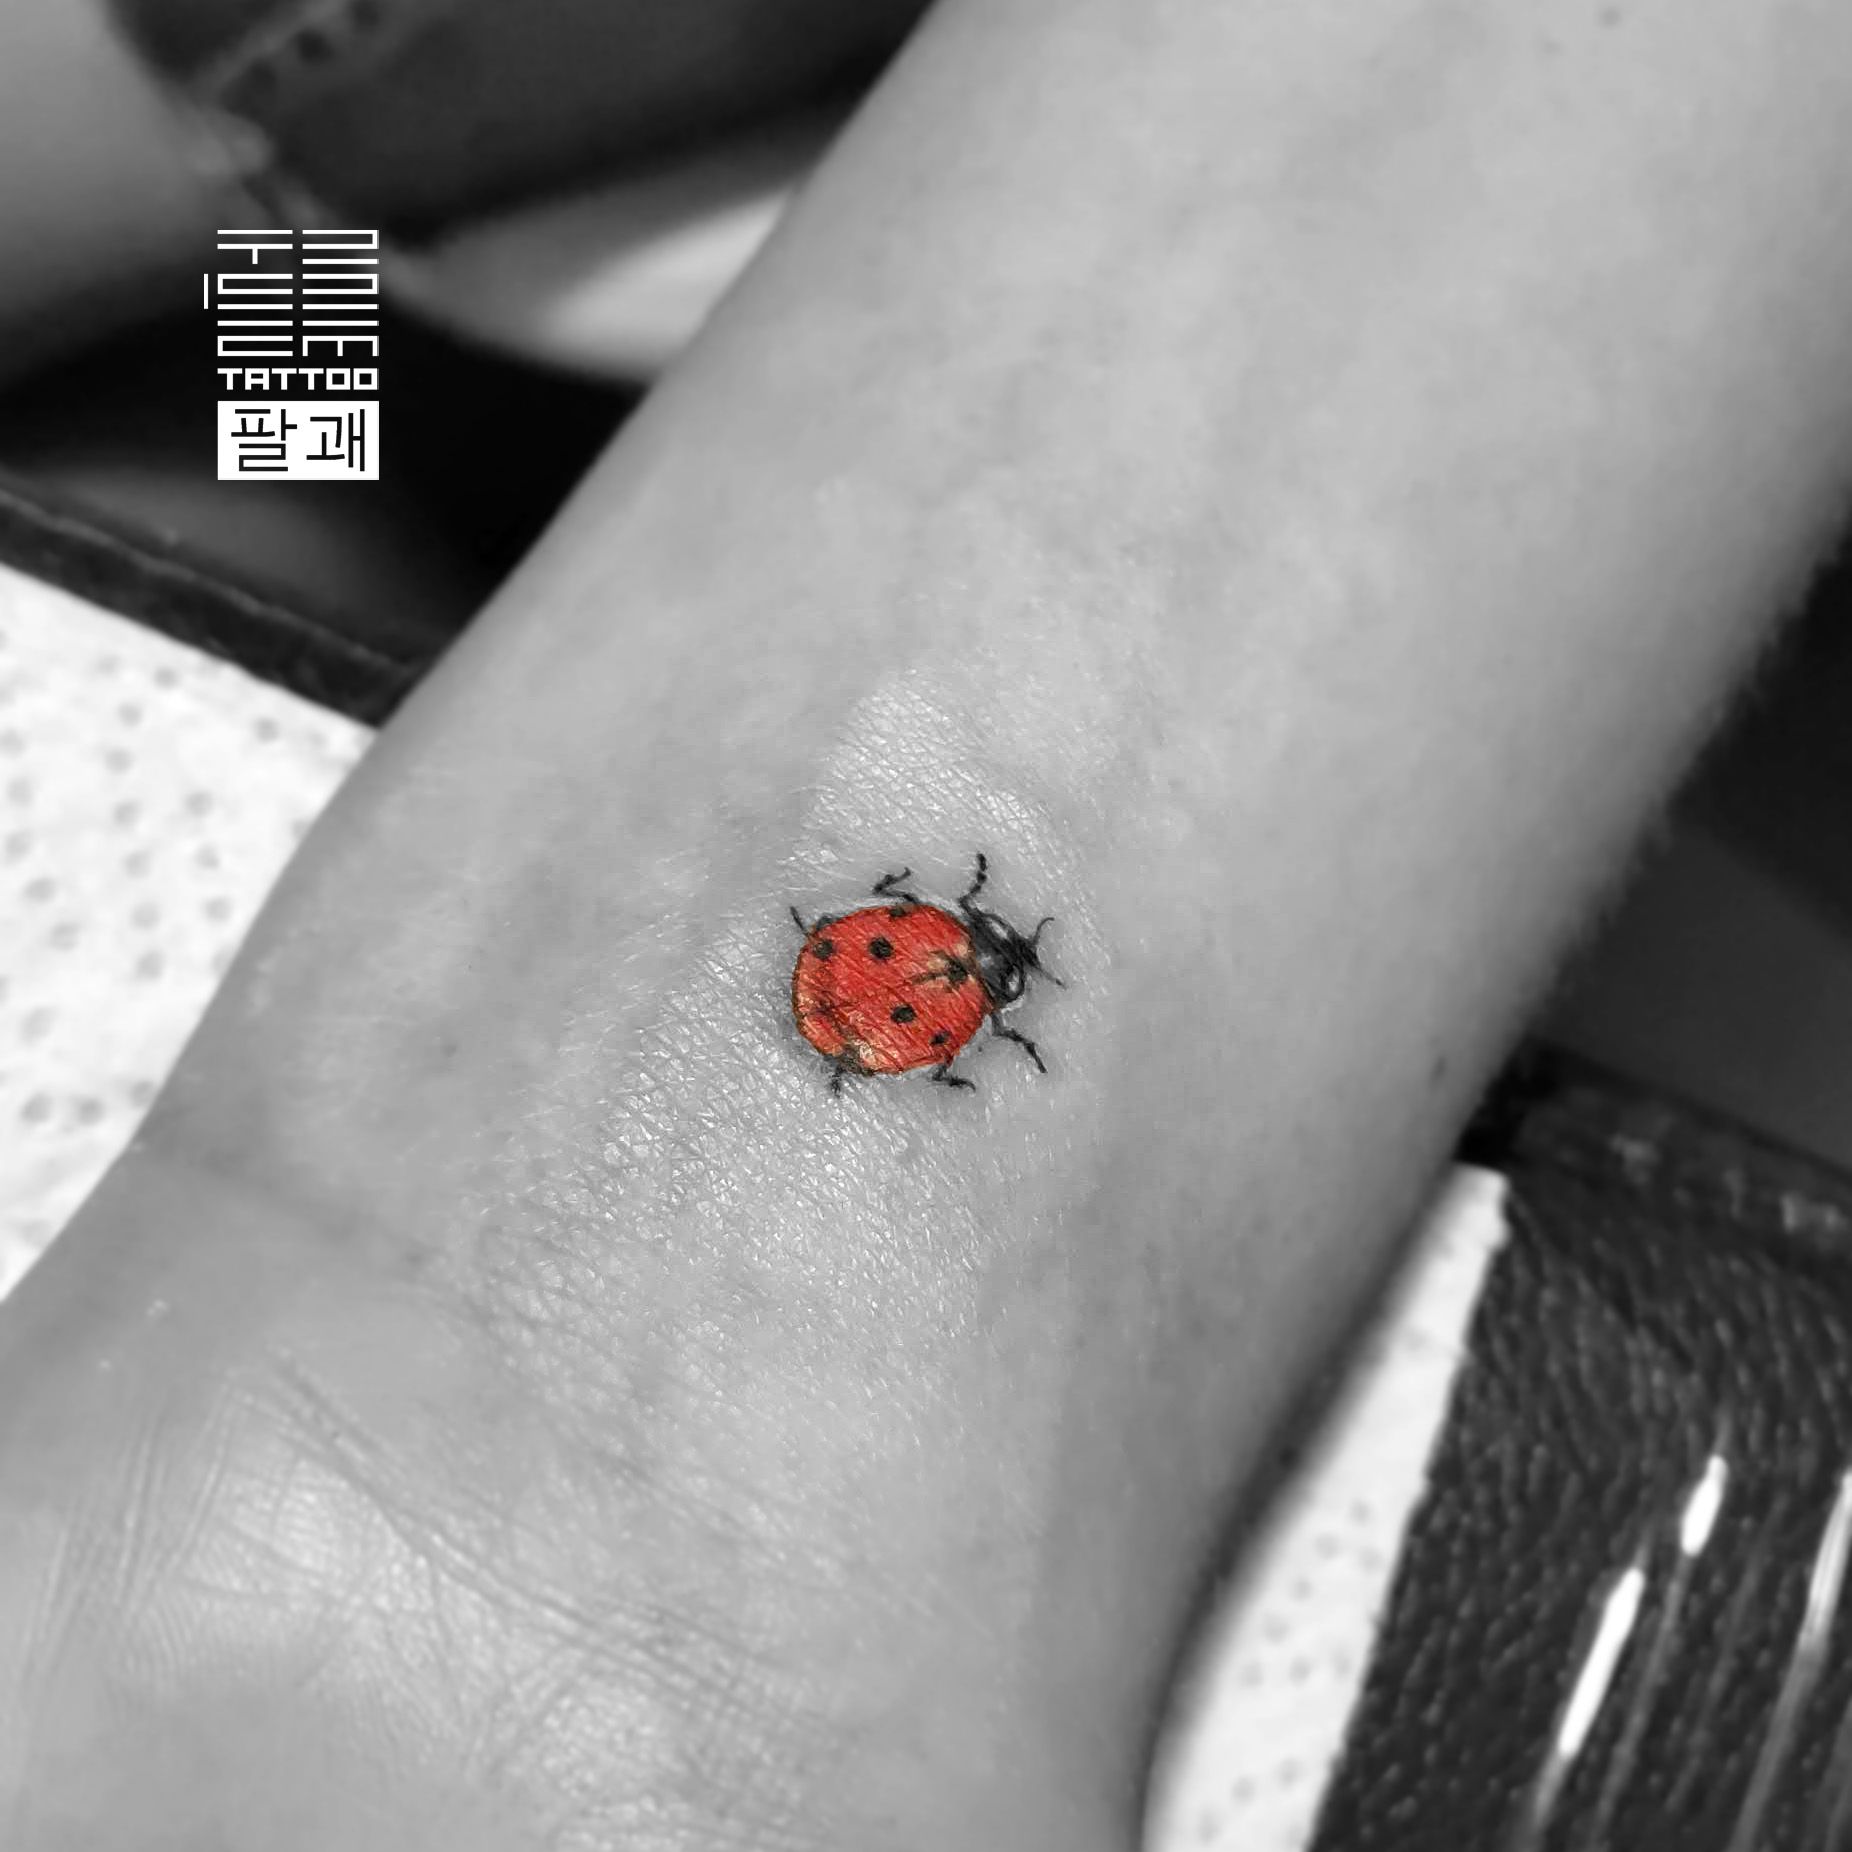 Tattoo uploaded by Oleksandr [Tattooist] • Just a small ladybug. - #тату  #божьякоровка #trigram #tattoo #ladybug #inkedsense • Tattoodo